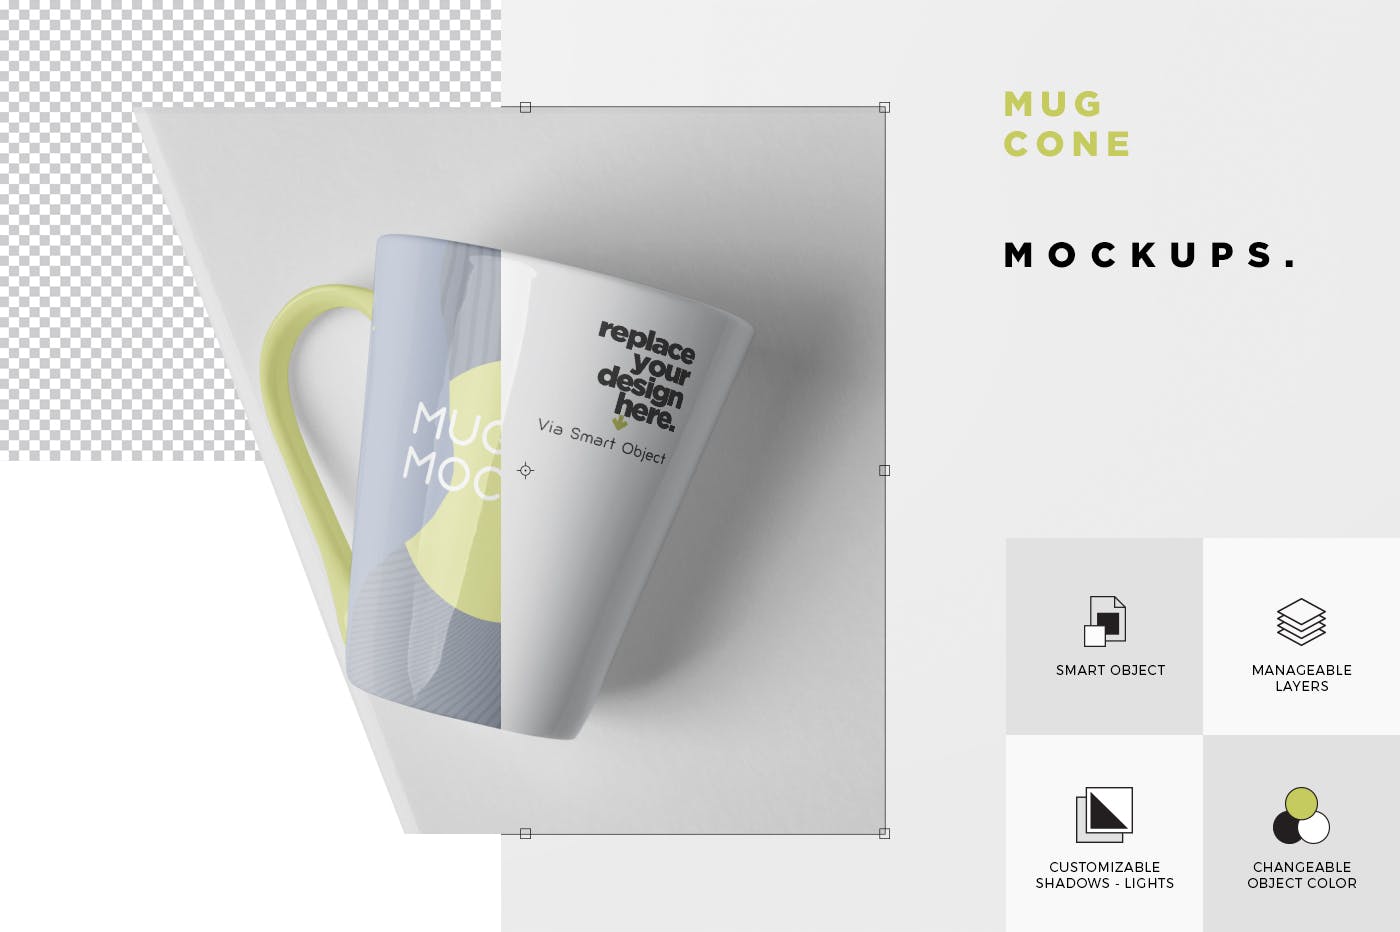 锥形马克杯图案设计素材库精选 Mug Mockup – Cone Shaped插图(5)